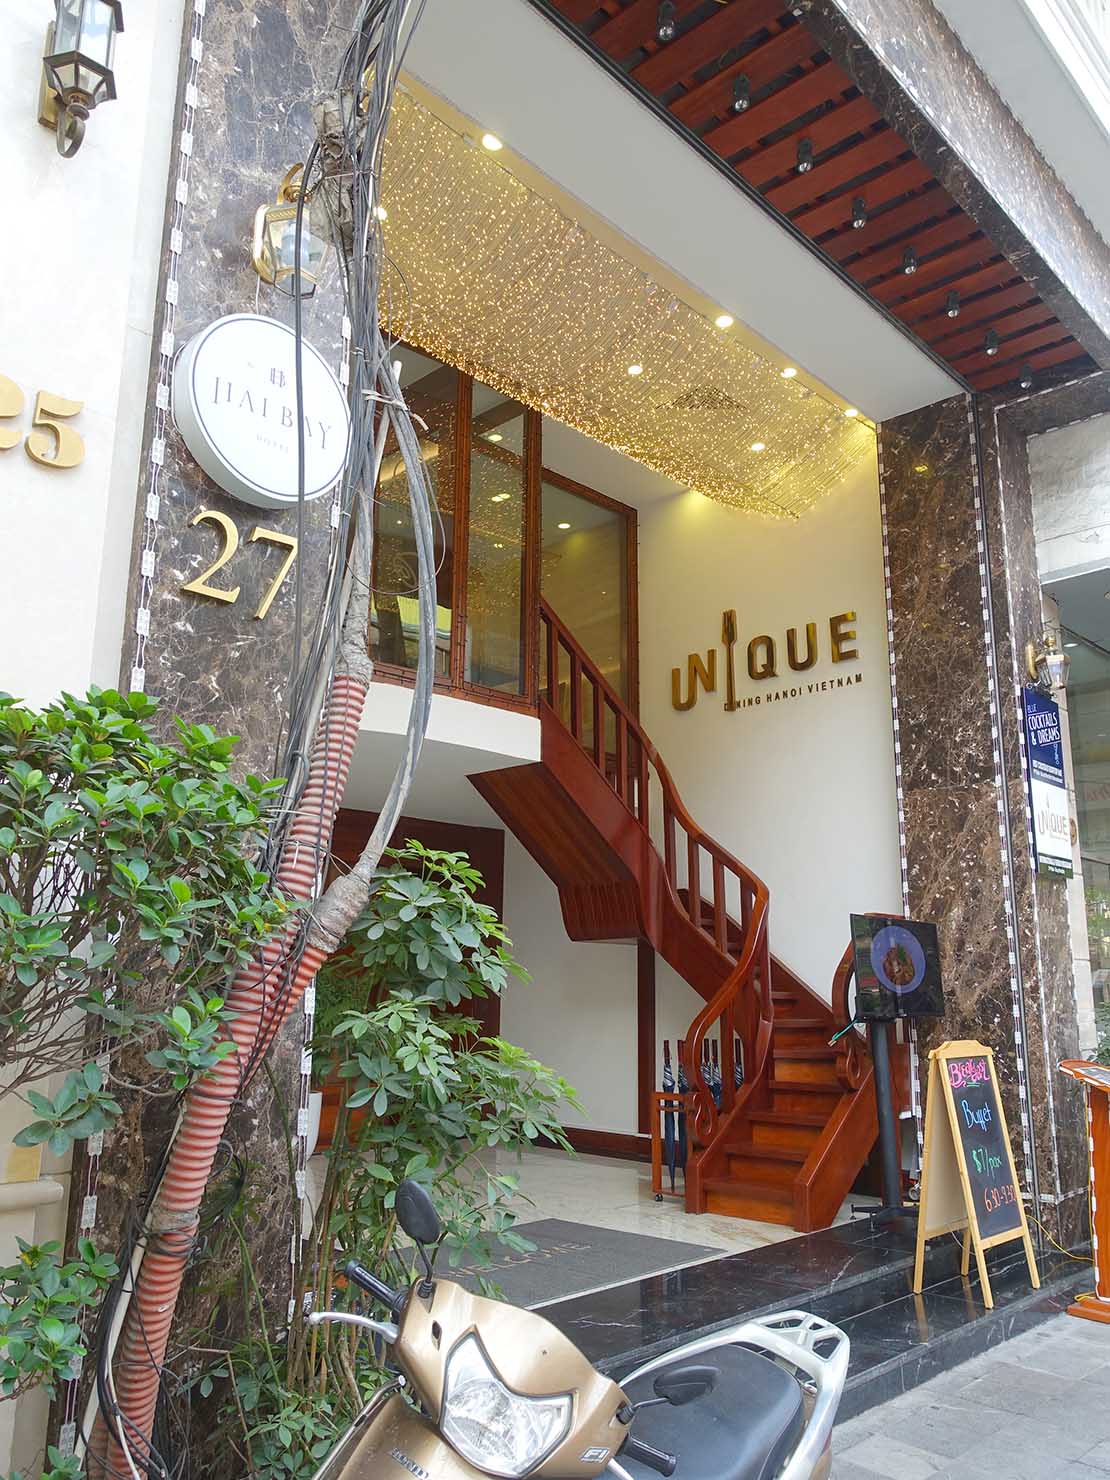 ハノイ旧市街ど真ん中の観光に便利なおすすめホテル「Hai Bay Hotel」の外観